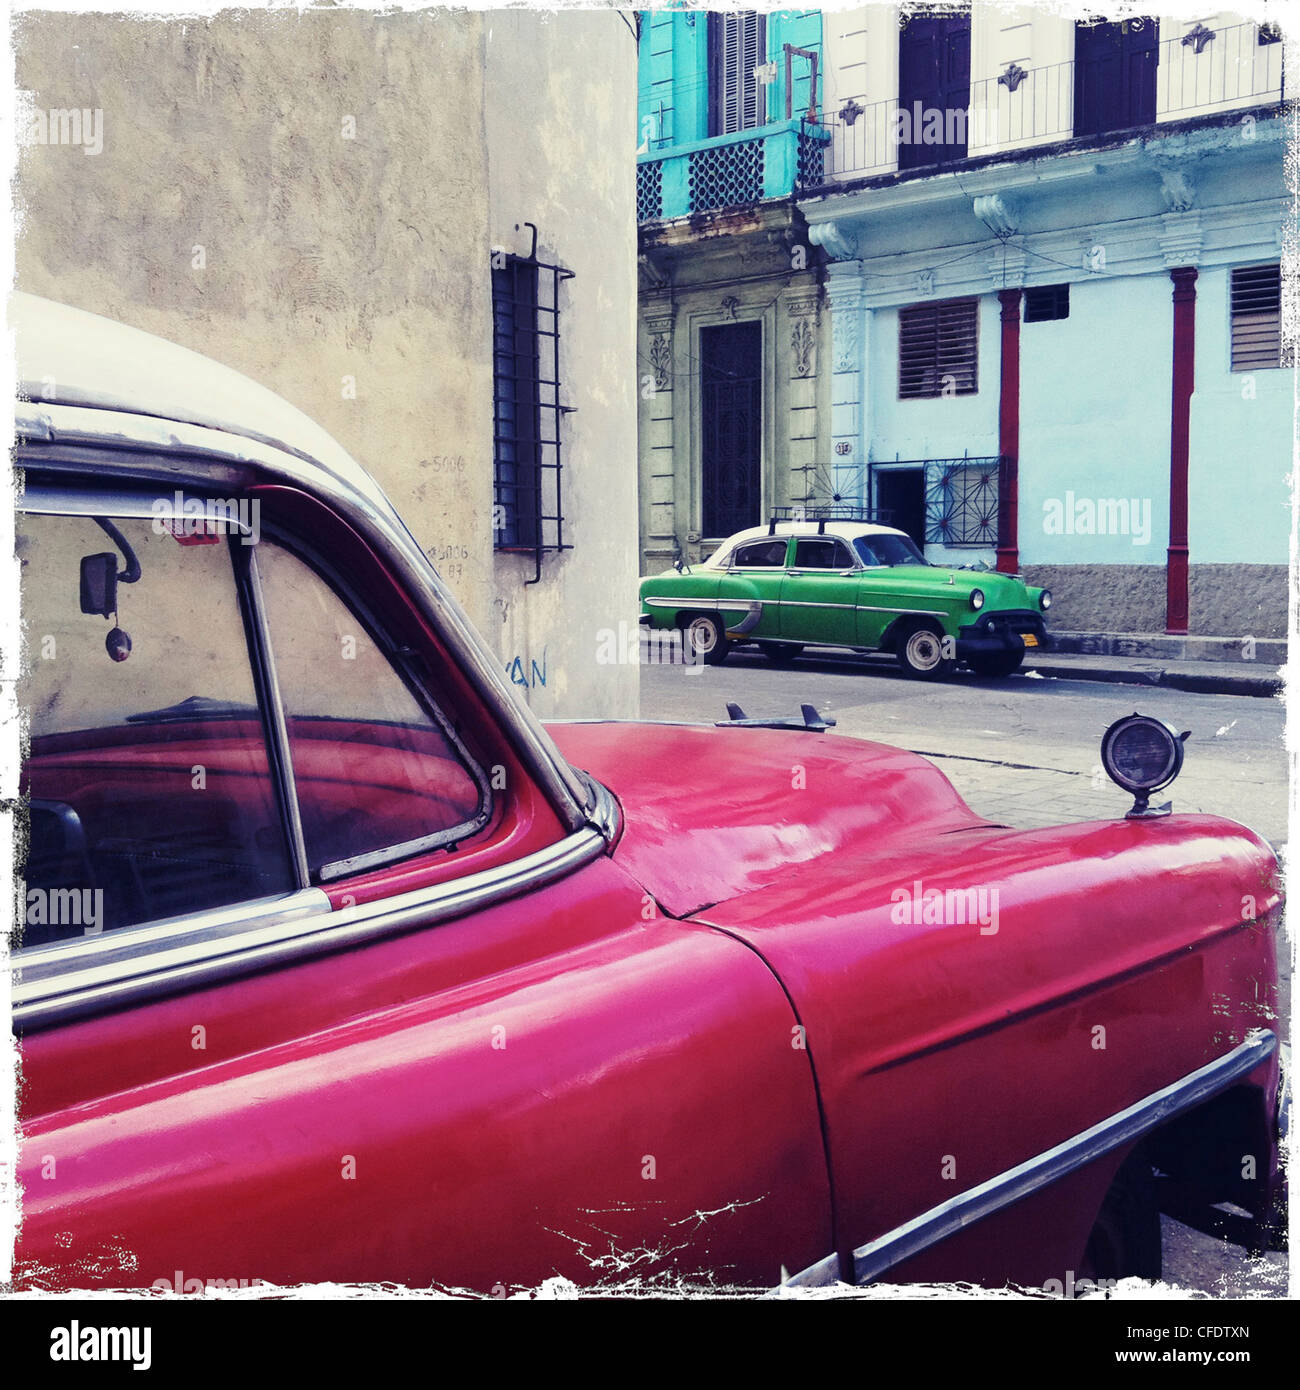 Angolo di strada con il rosso e il verde classic American Cars, Avana Centro Avana, Cuba, West Indies, America Centrale Foto Stock